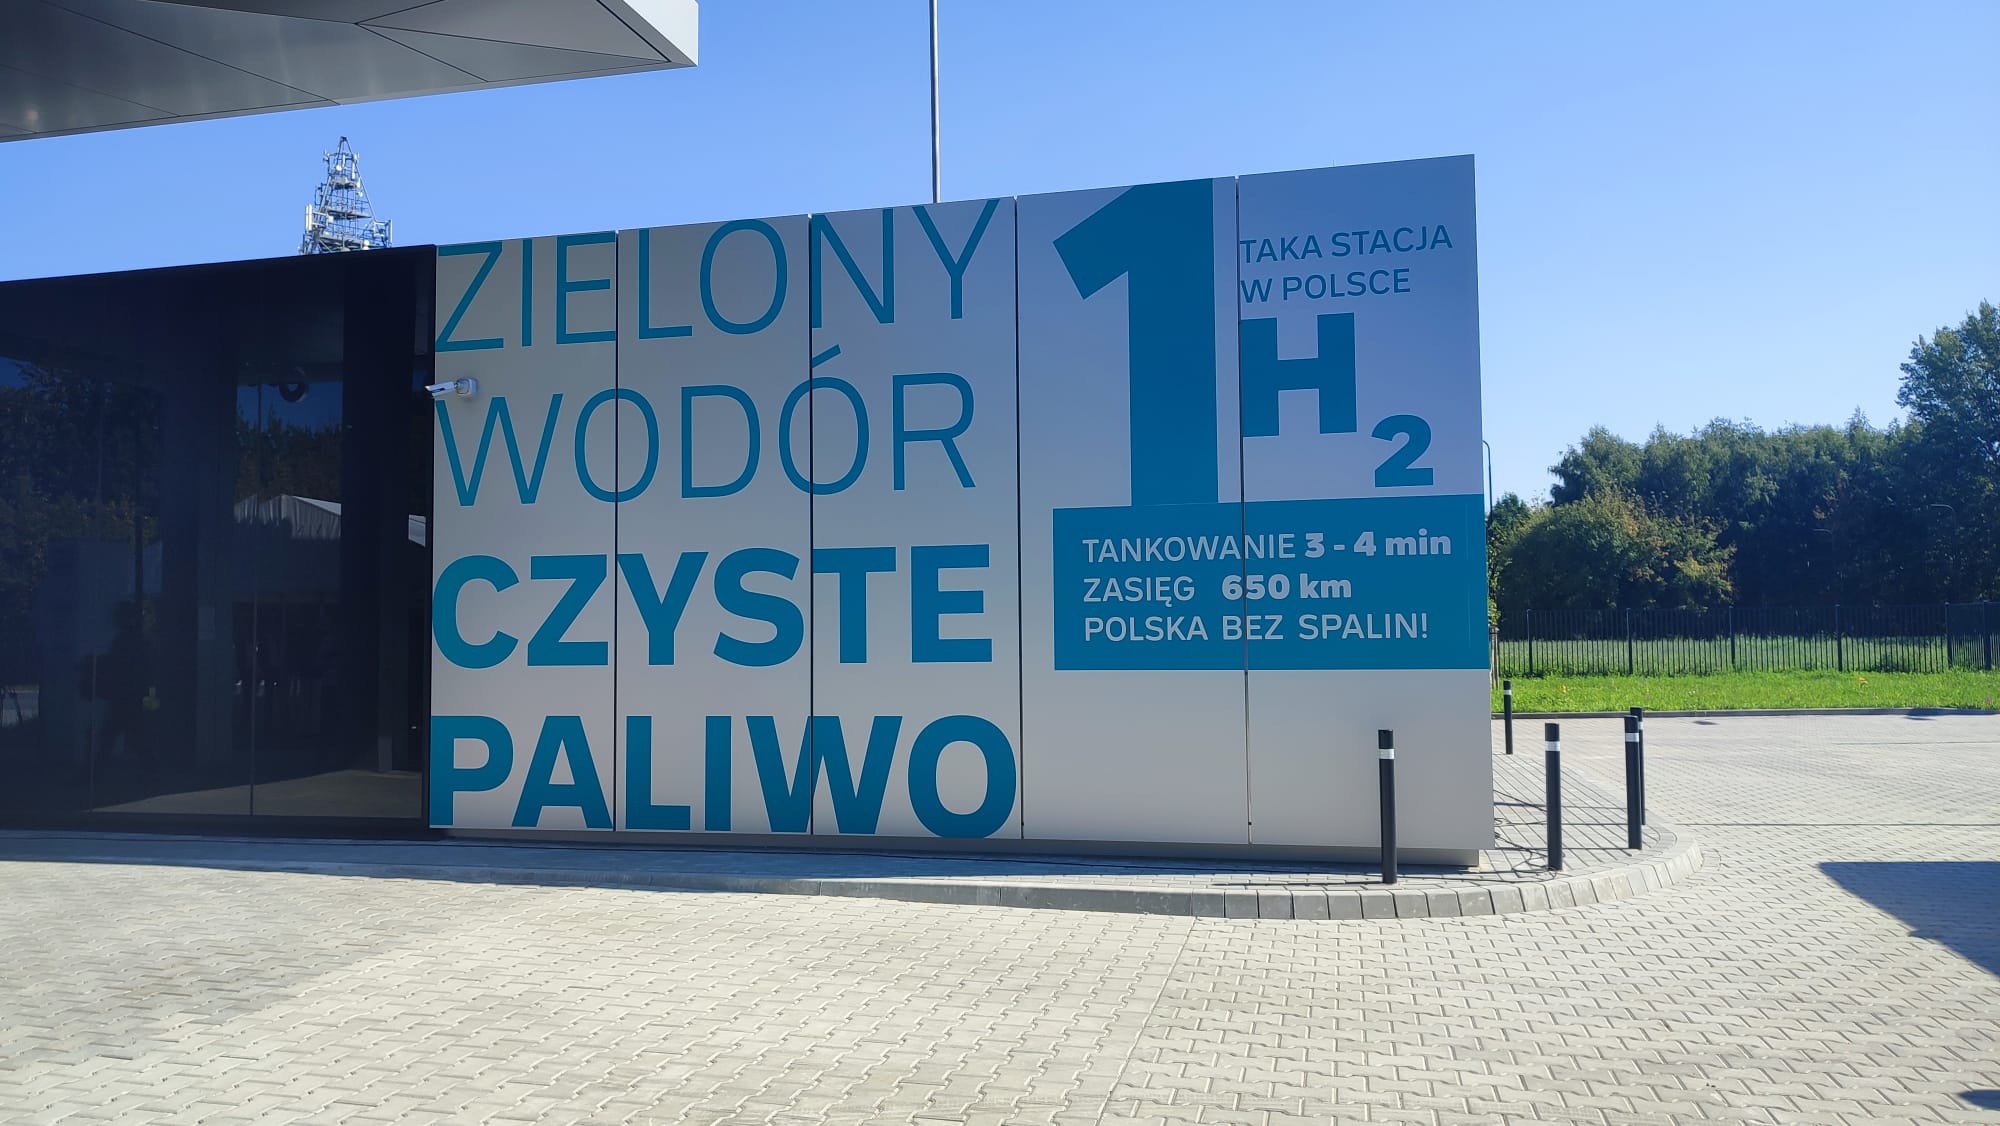 Stacja wodorowa w Warszawie, fot. hydrogepolska.biz